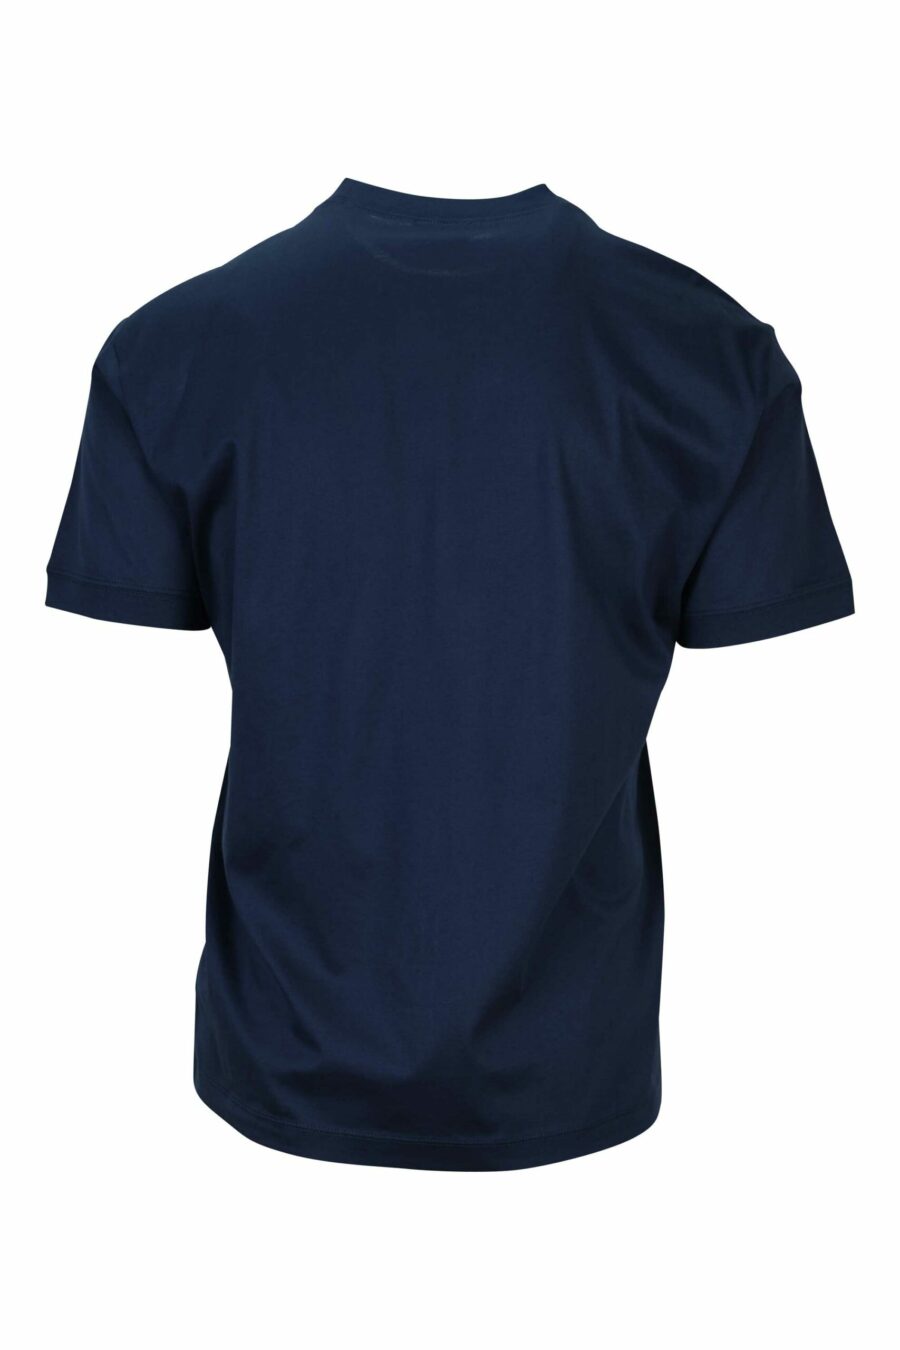 T-shirt bleu foncé avec maxilogo "lux identity" dans un carré vert - 8058947495825 1 scaled